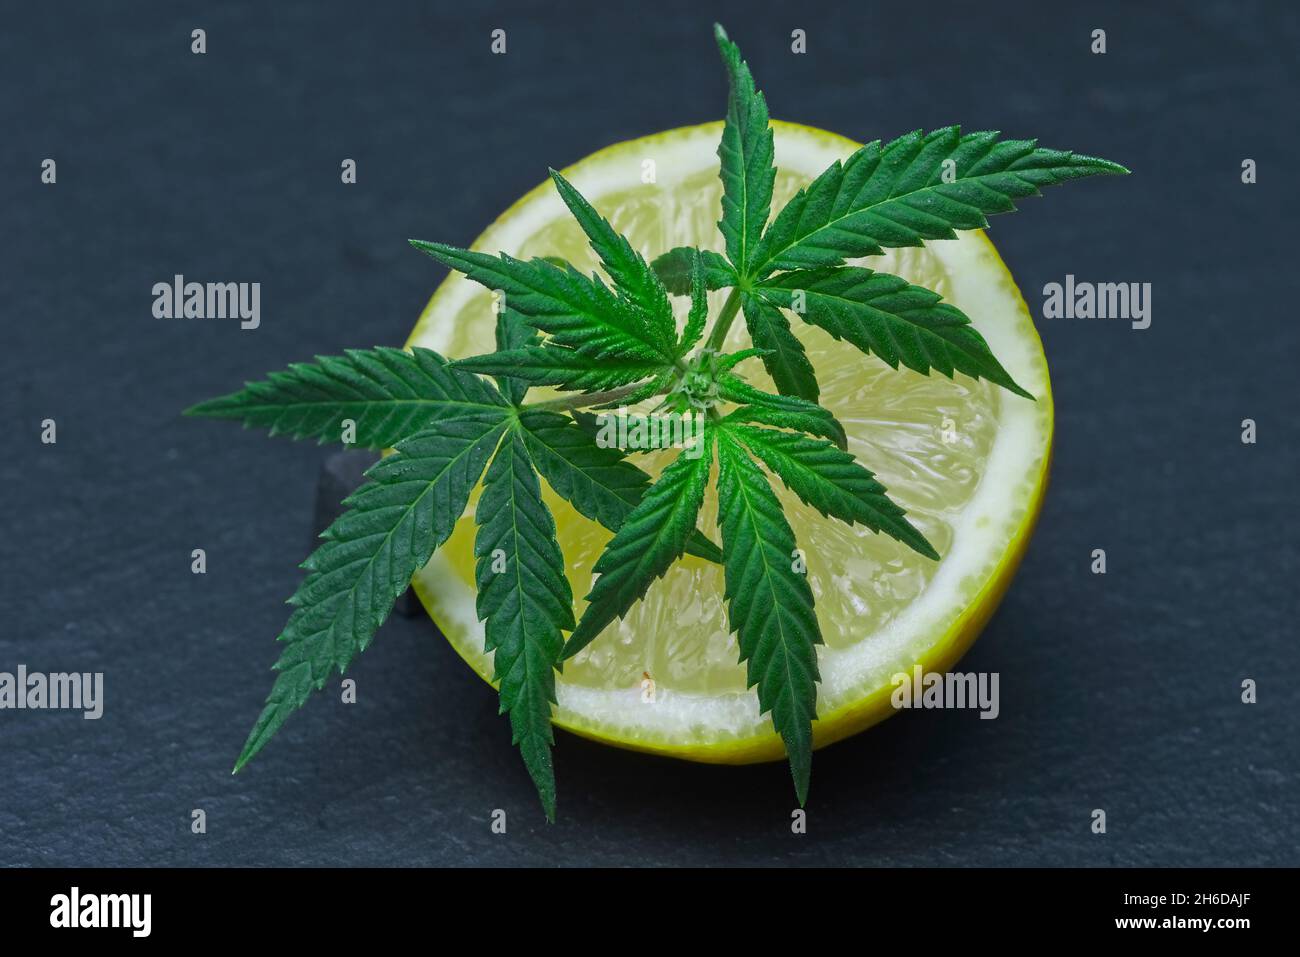 Ikonisches Cannabis hinterlassen auf einer geschnittenen Zitrone. Limonen-Terpene-Konzept auf grauem Hintergrund. Stockfoto